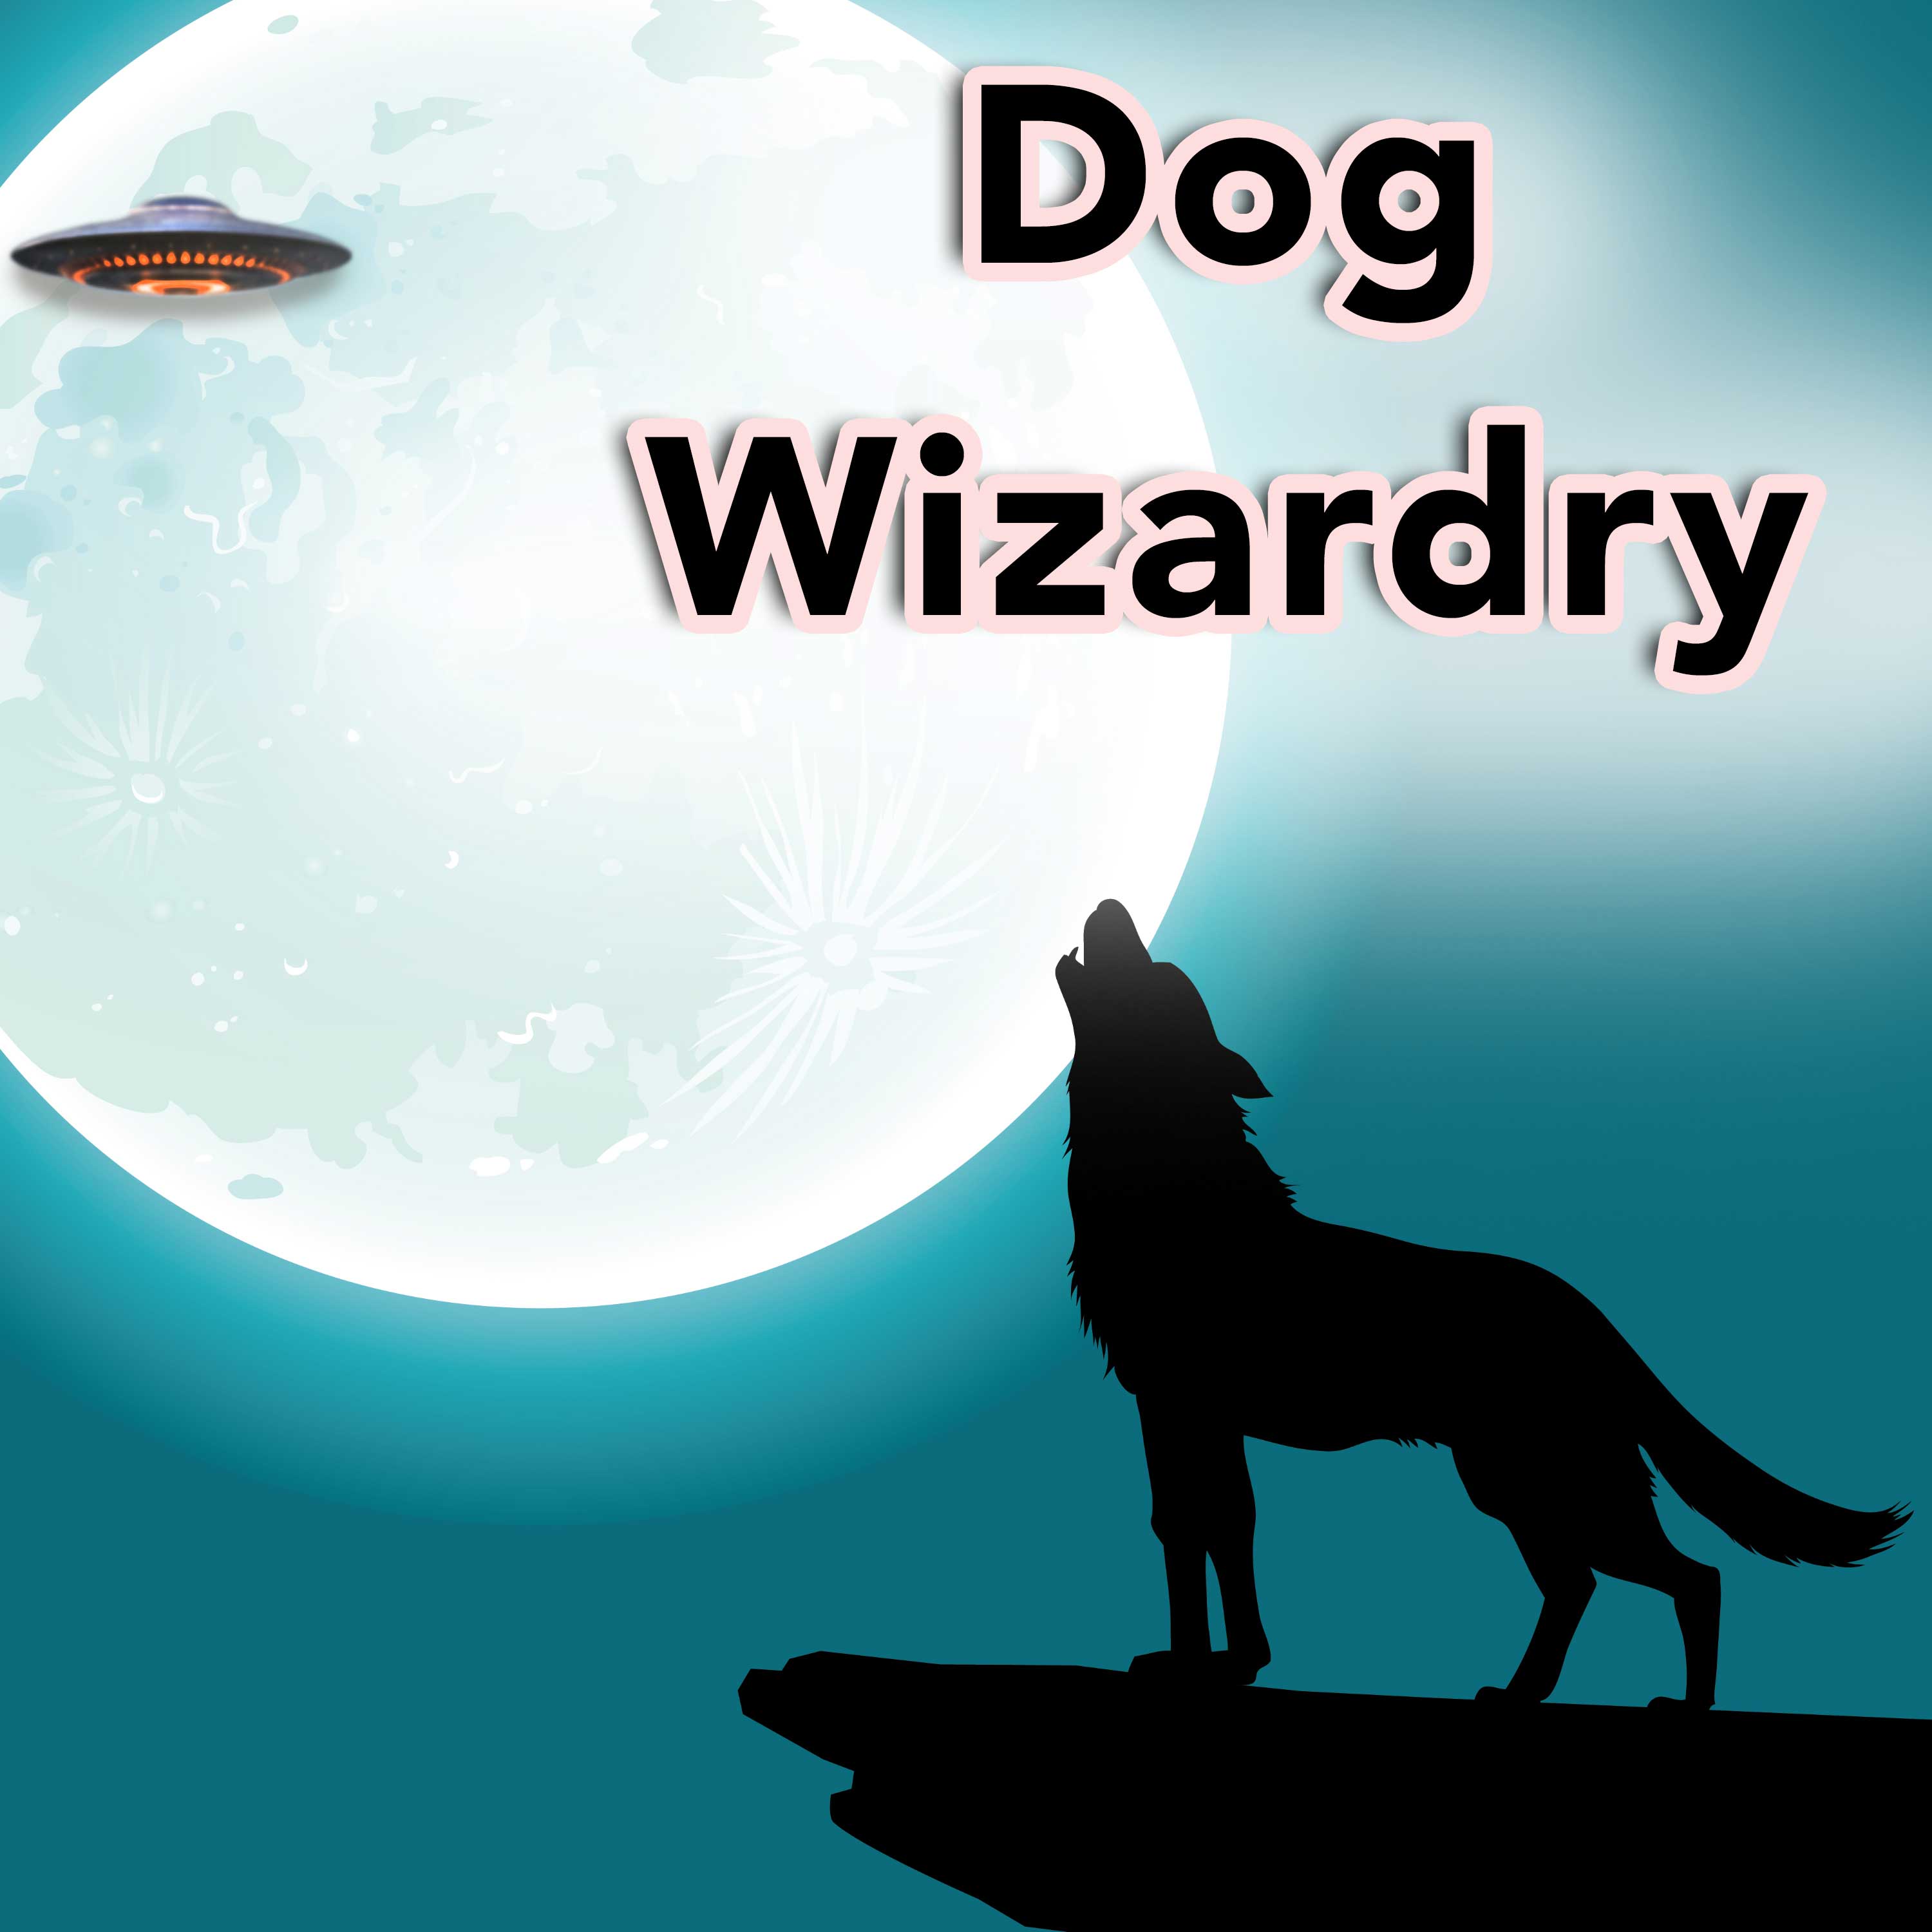 Dog Wizardry